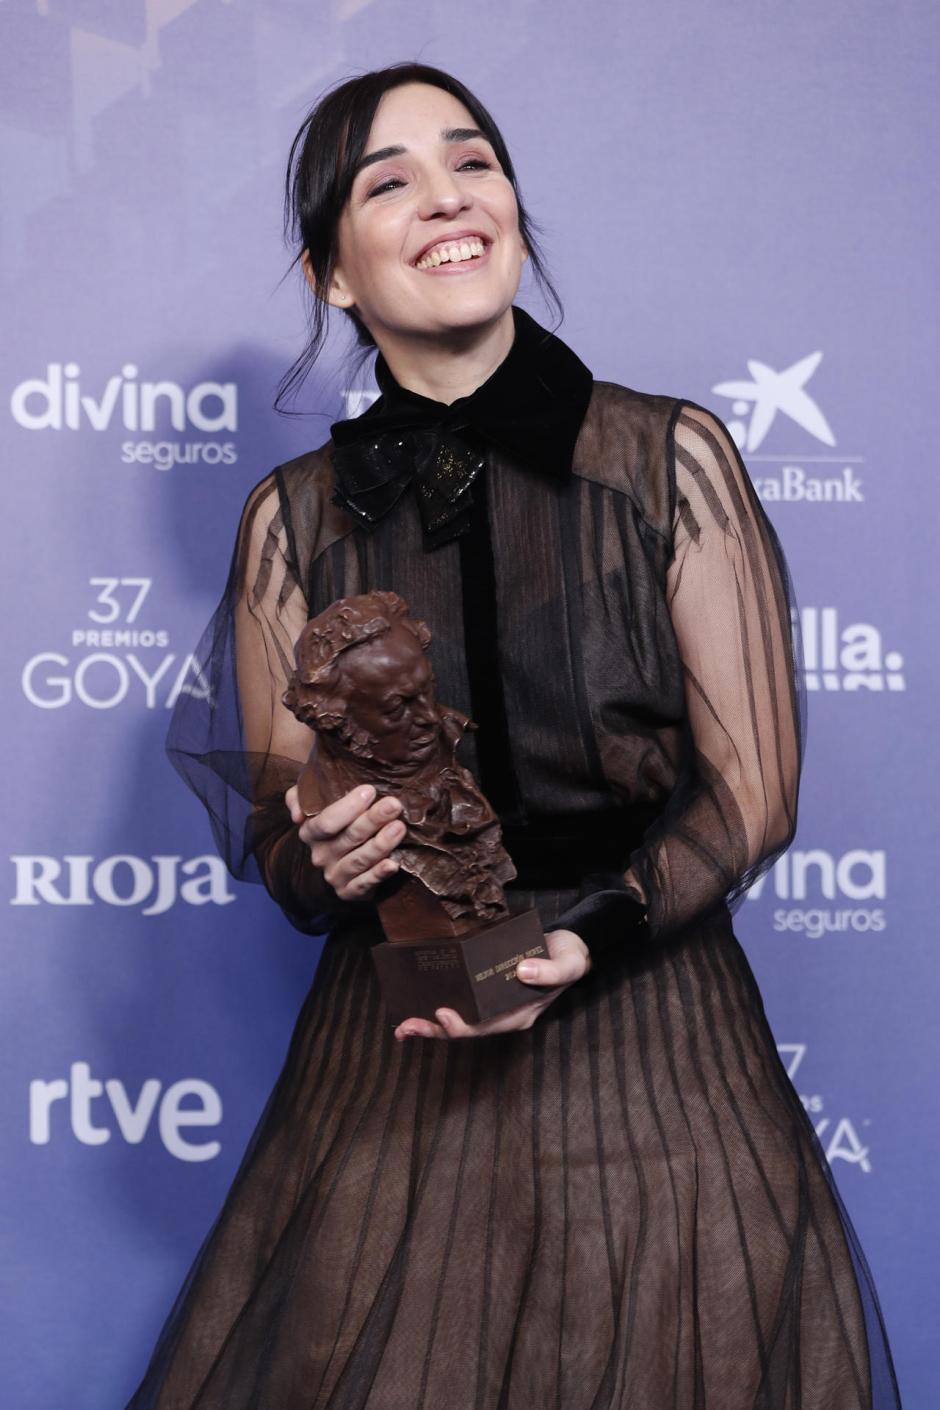 La realizadora Alauda Ruiz de Azúa tras recibir el Goya a la mejor dirección novel por su película "Cinco lobitos"